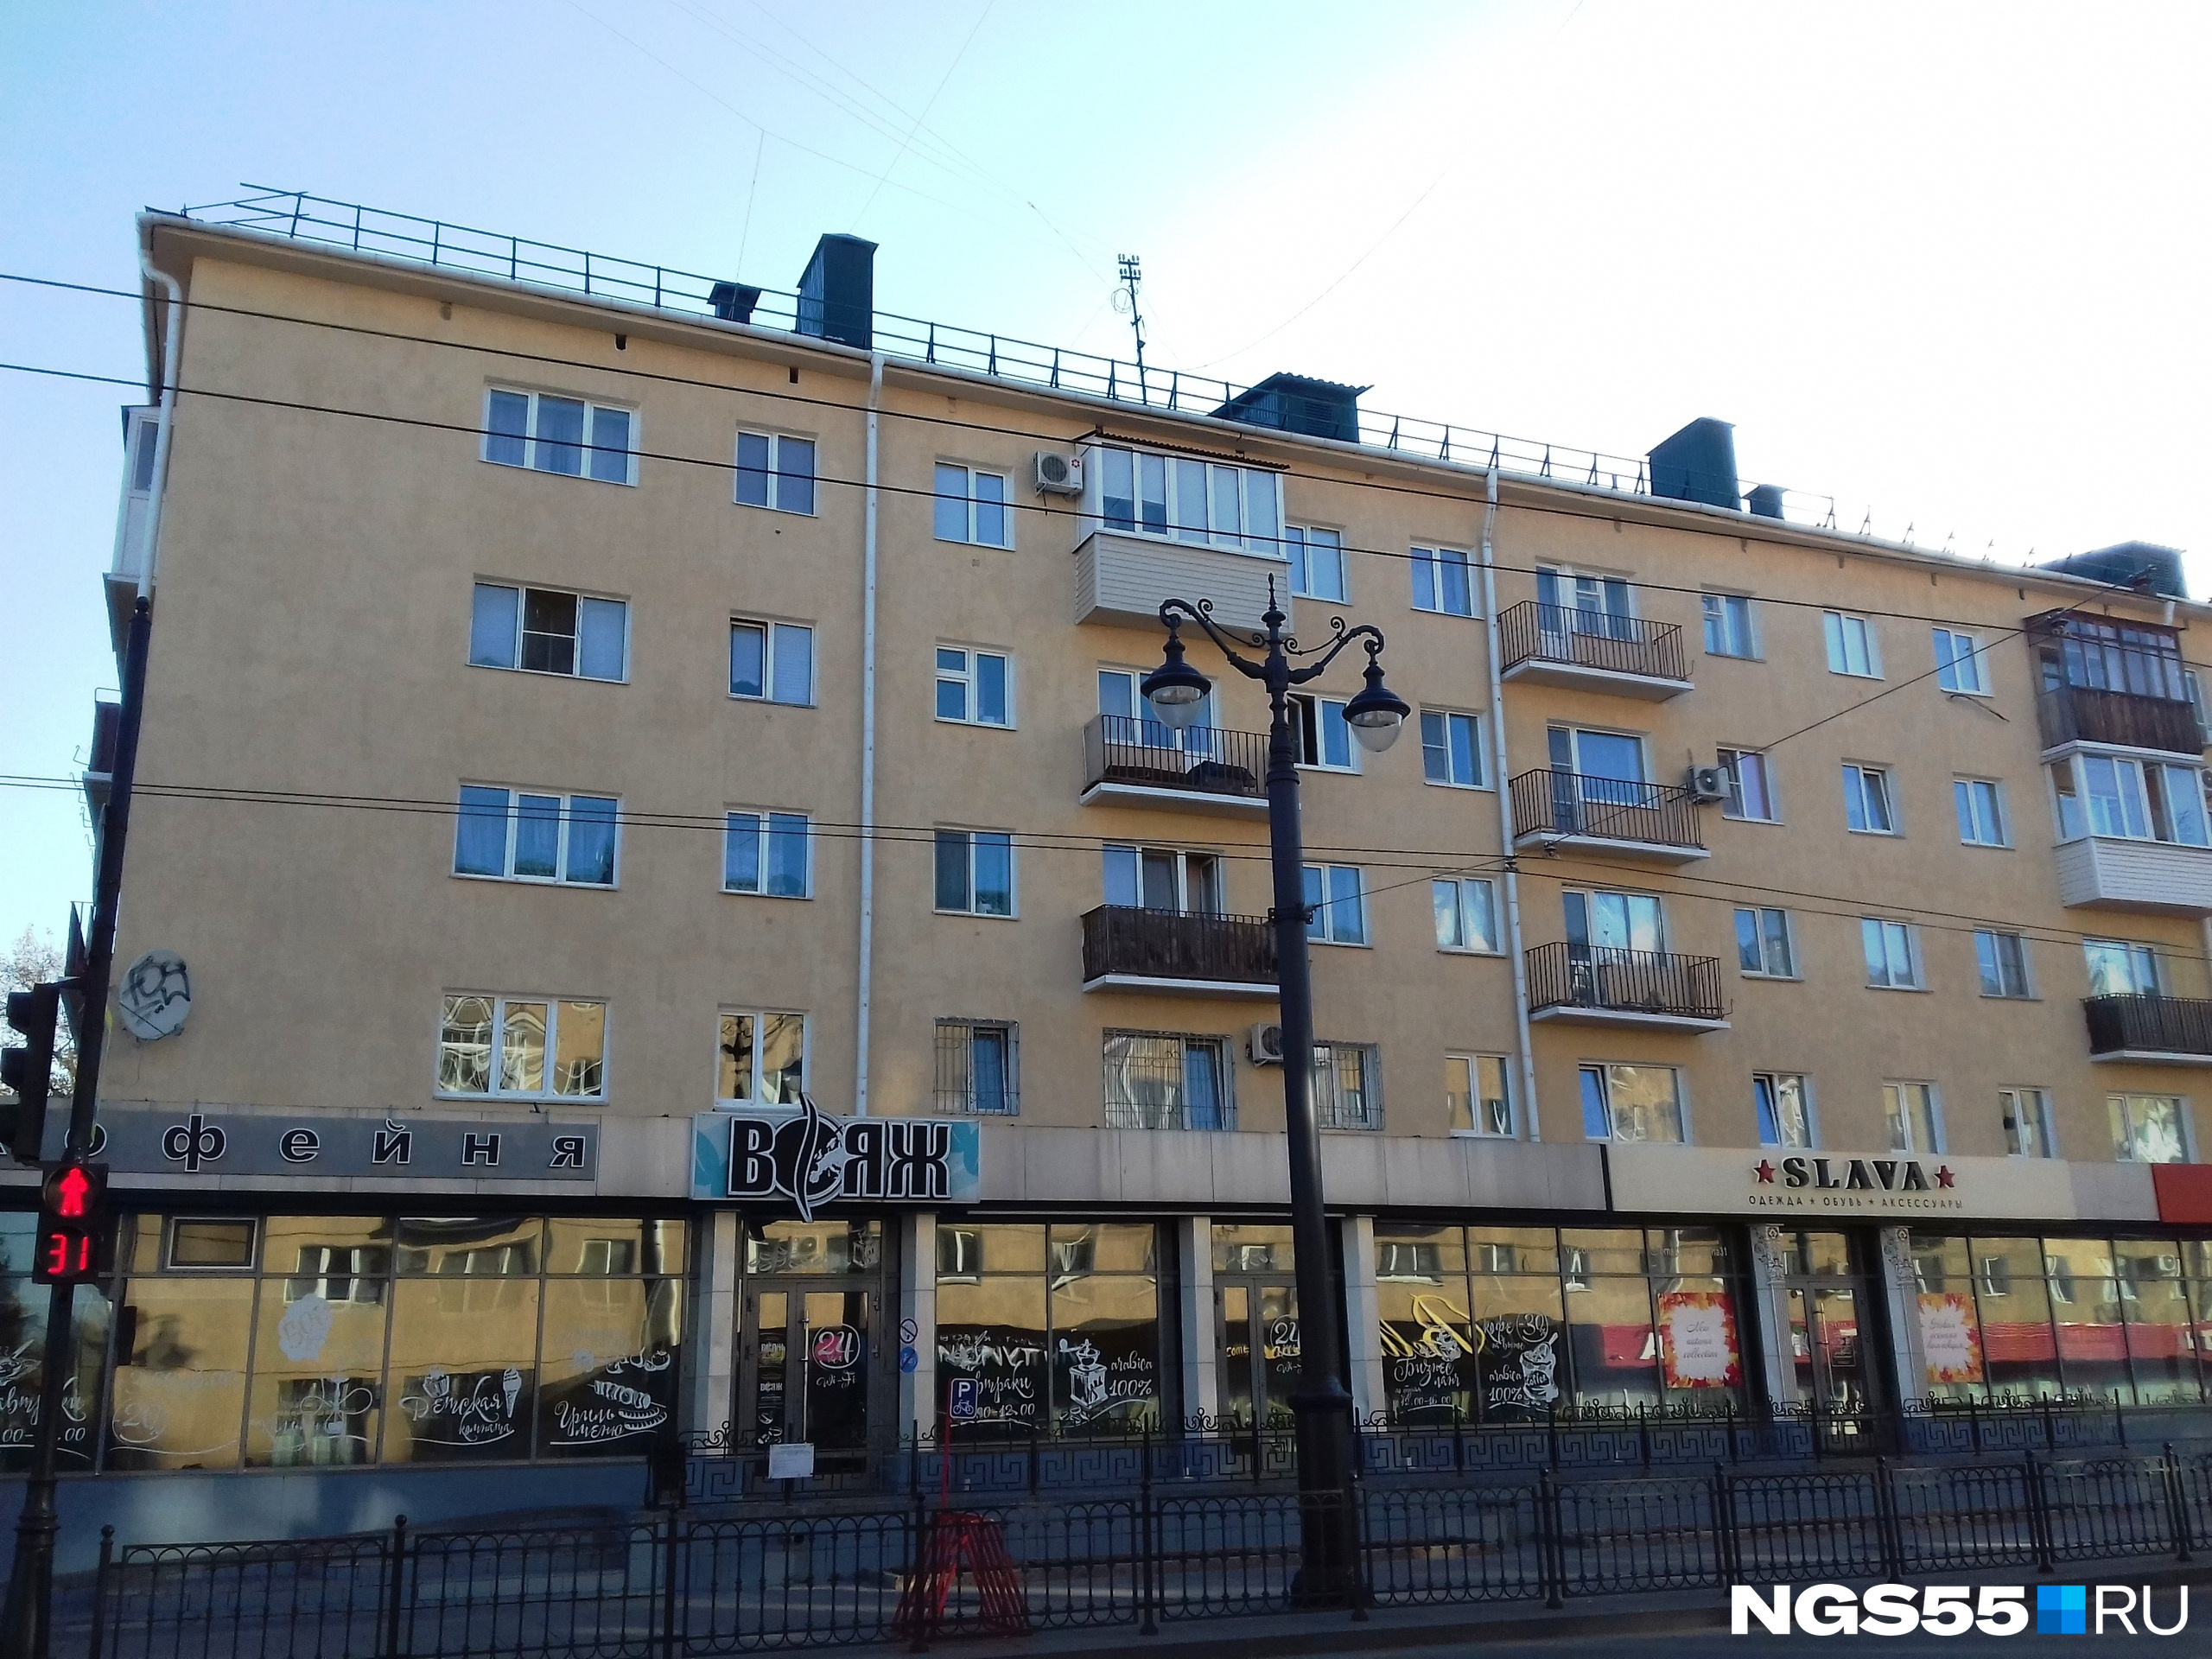 Дом на Ленина, 30 стал первым в городе, где завершили работу над фасадом